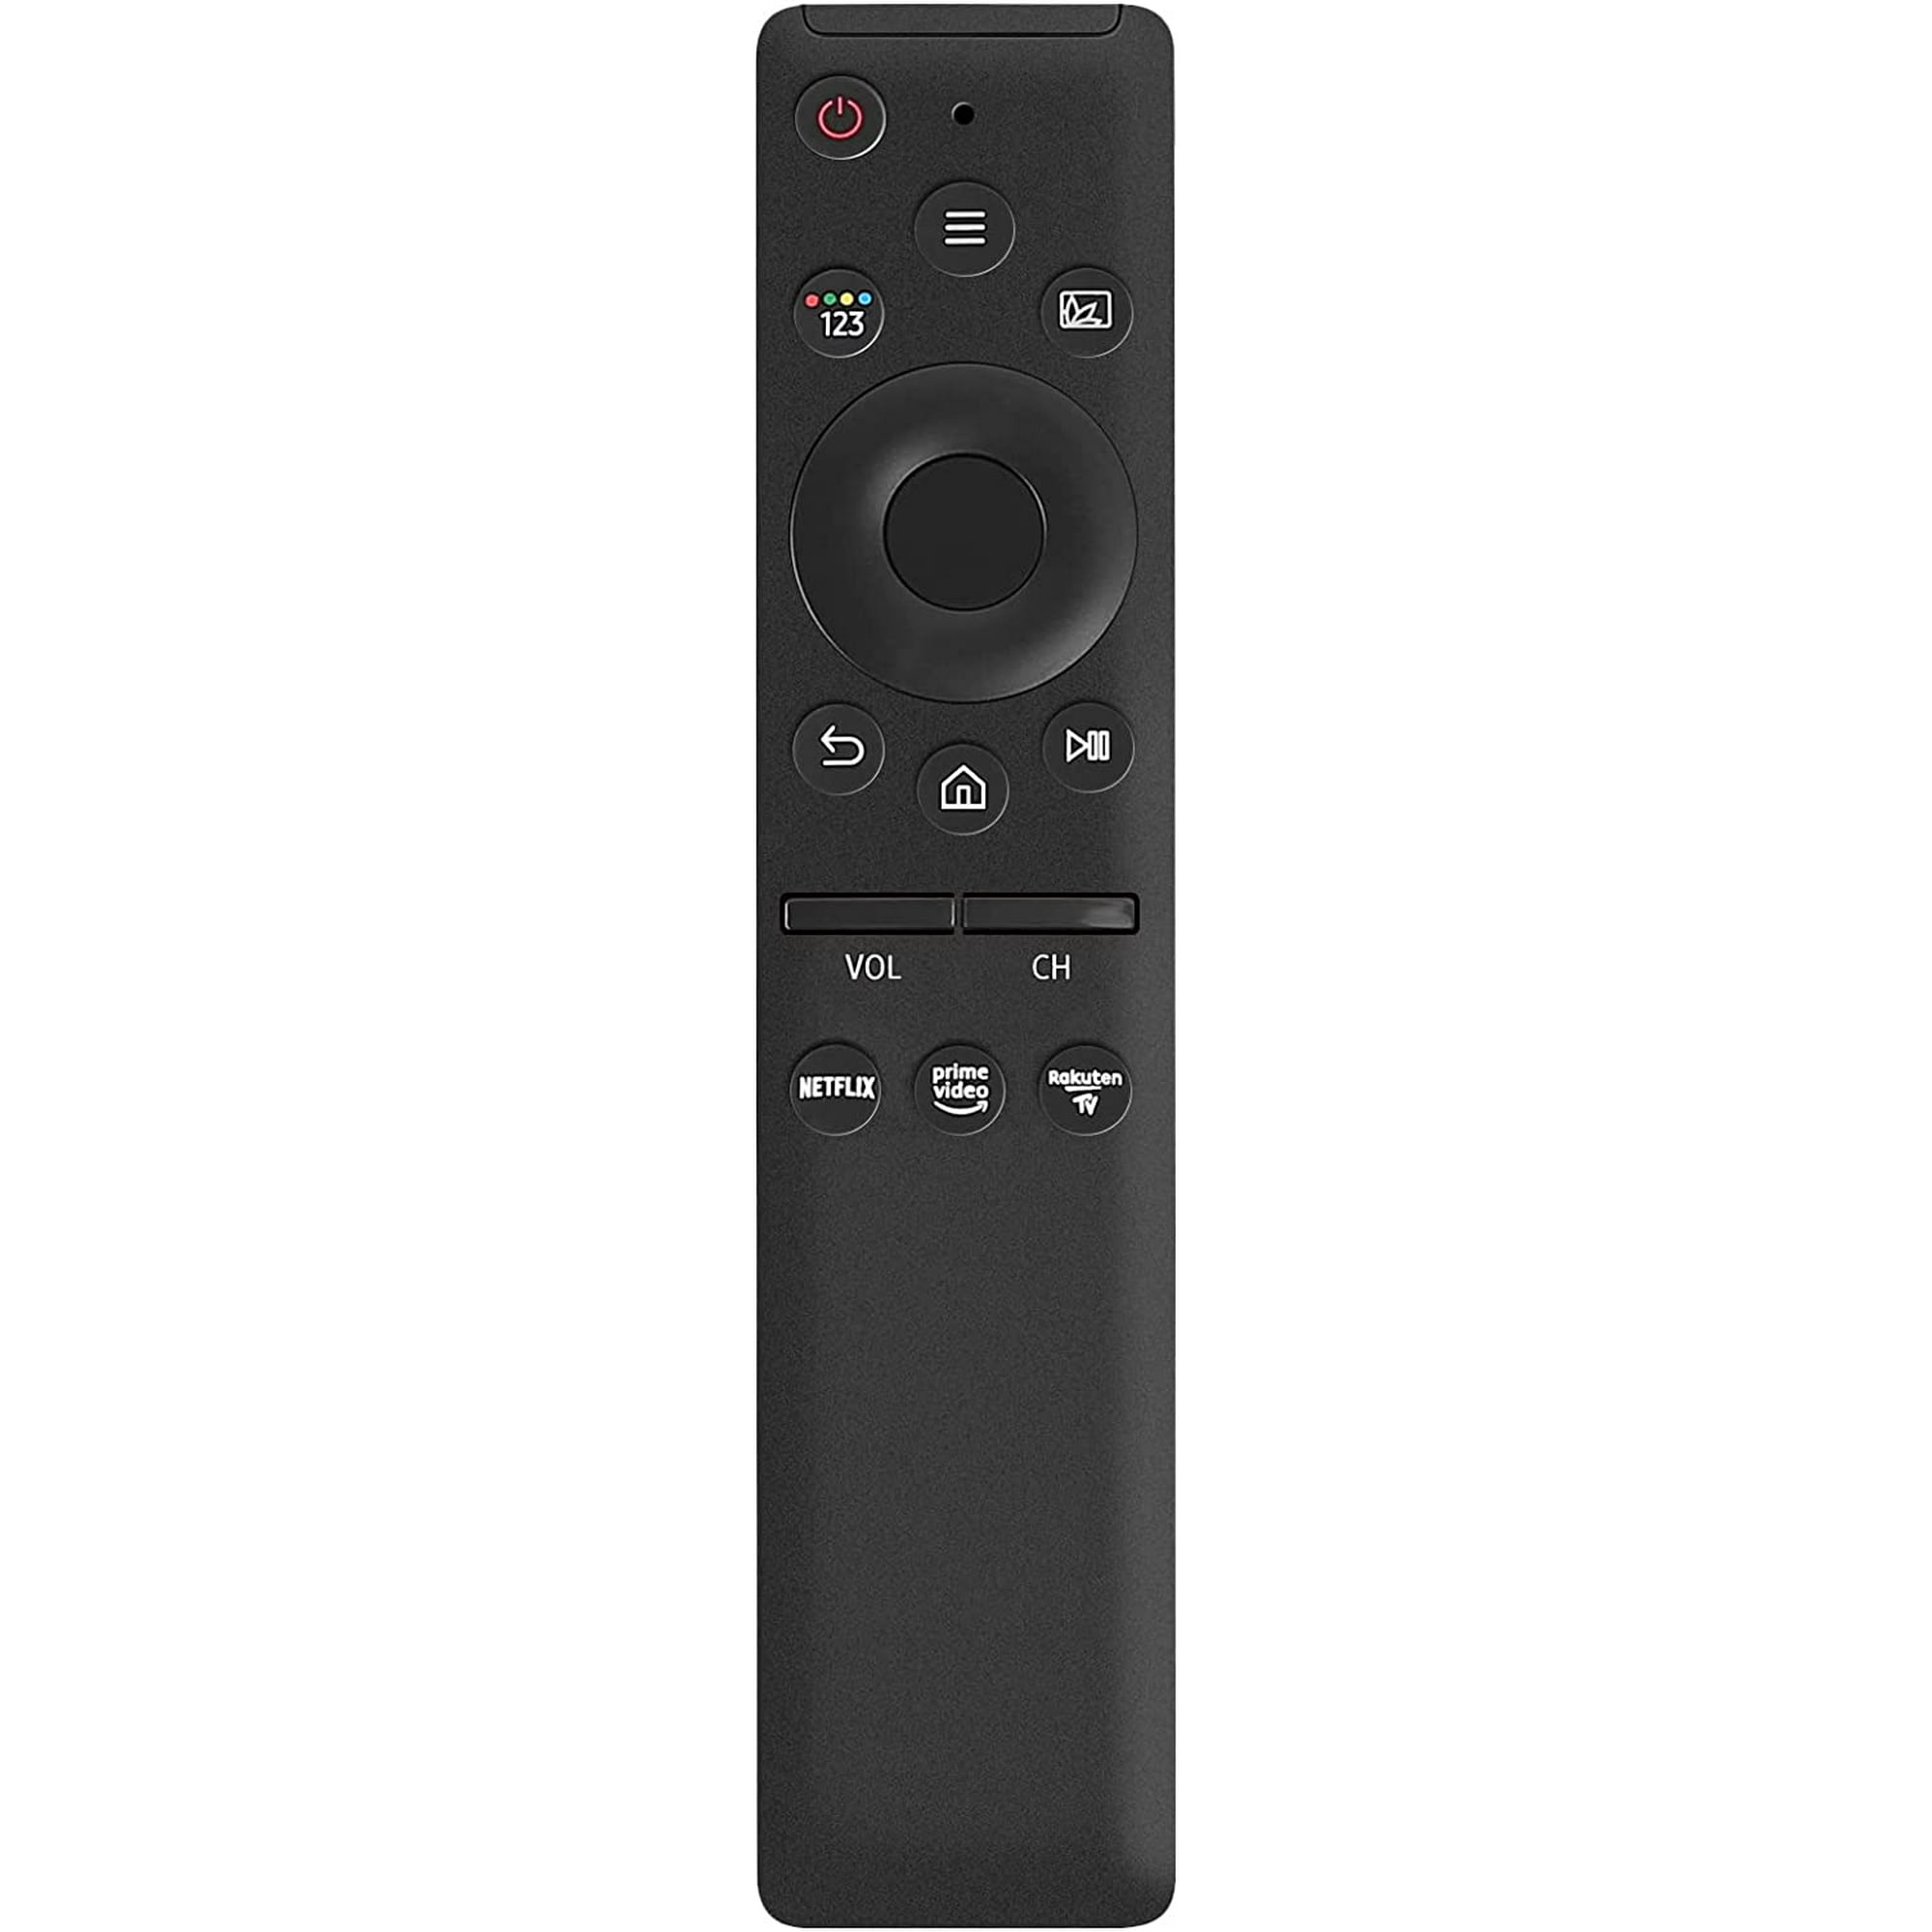 Mando a distancia compatible con LG Smart TV con botones Netflix y   Prime Video